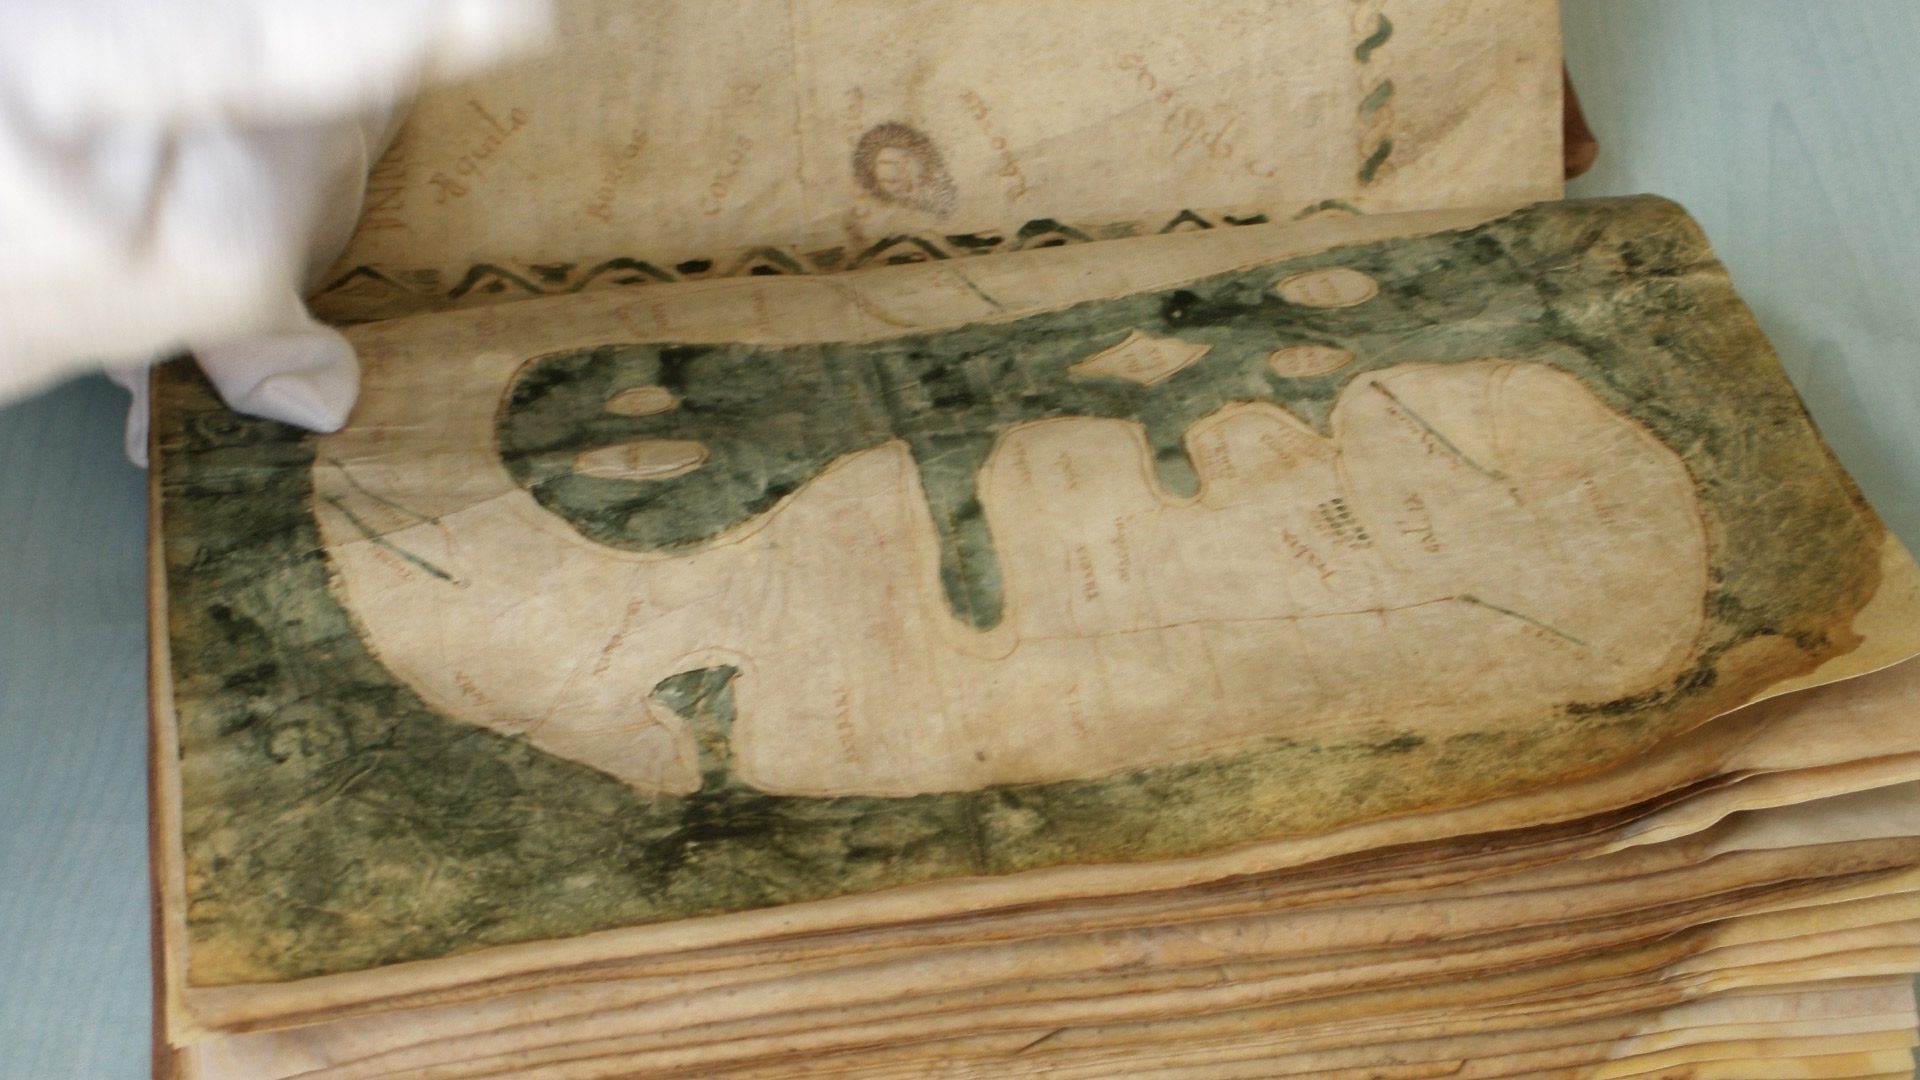 La Mappa Mundi di Albi, mappa medievale dell'VIII secolo, iscritta nel registro della Memoria del Mondo UNESCO